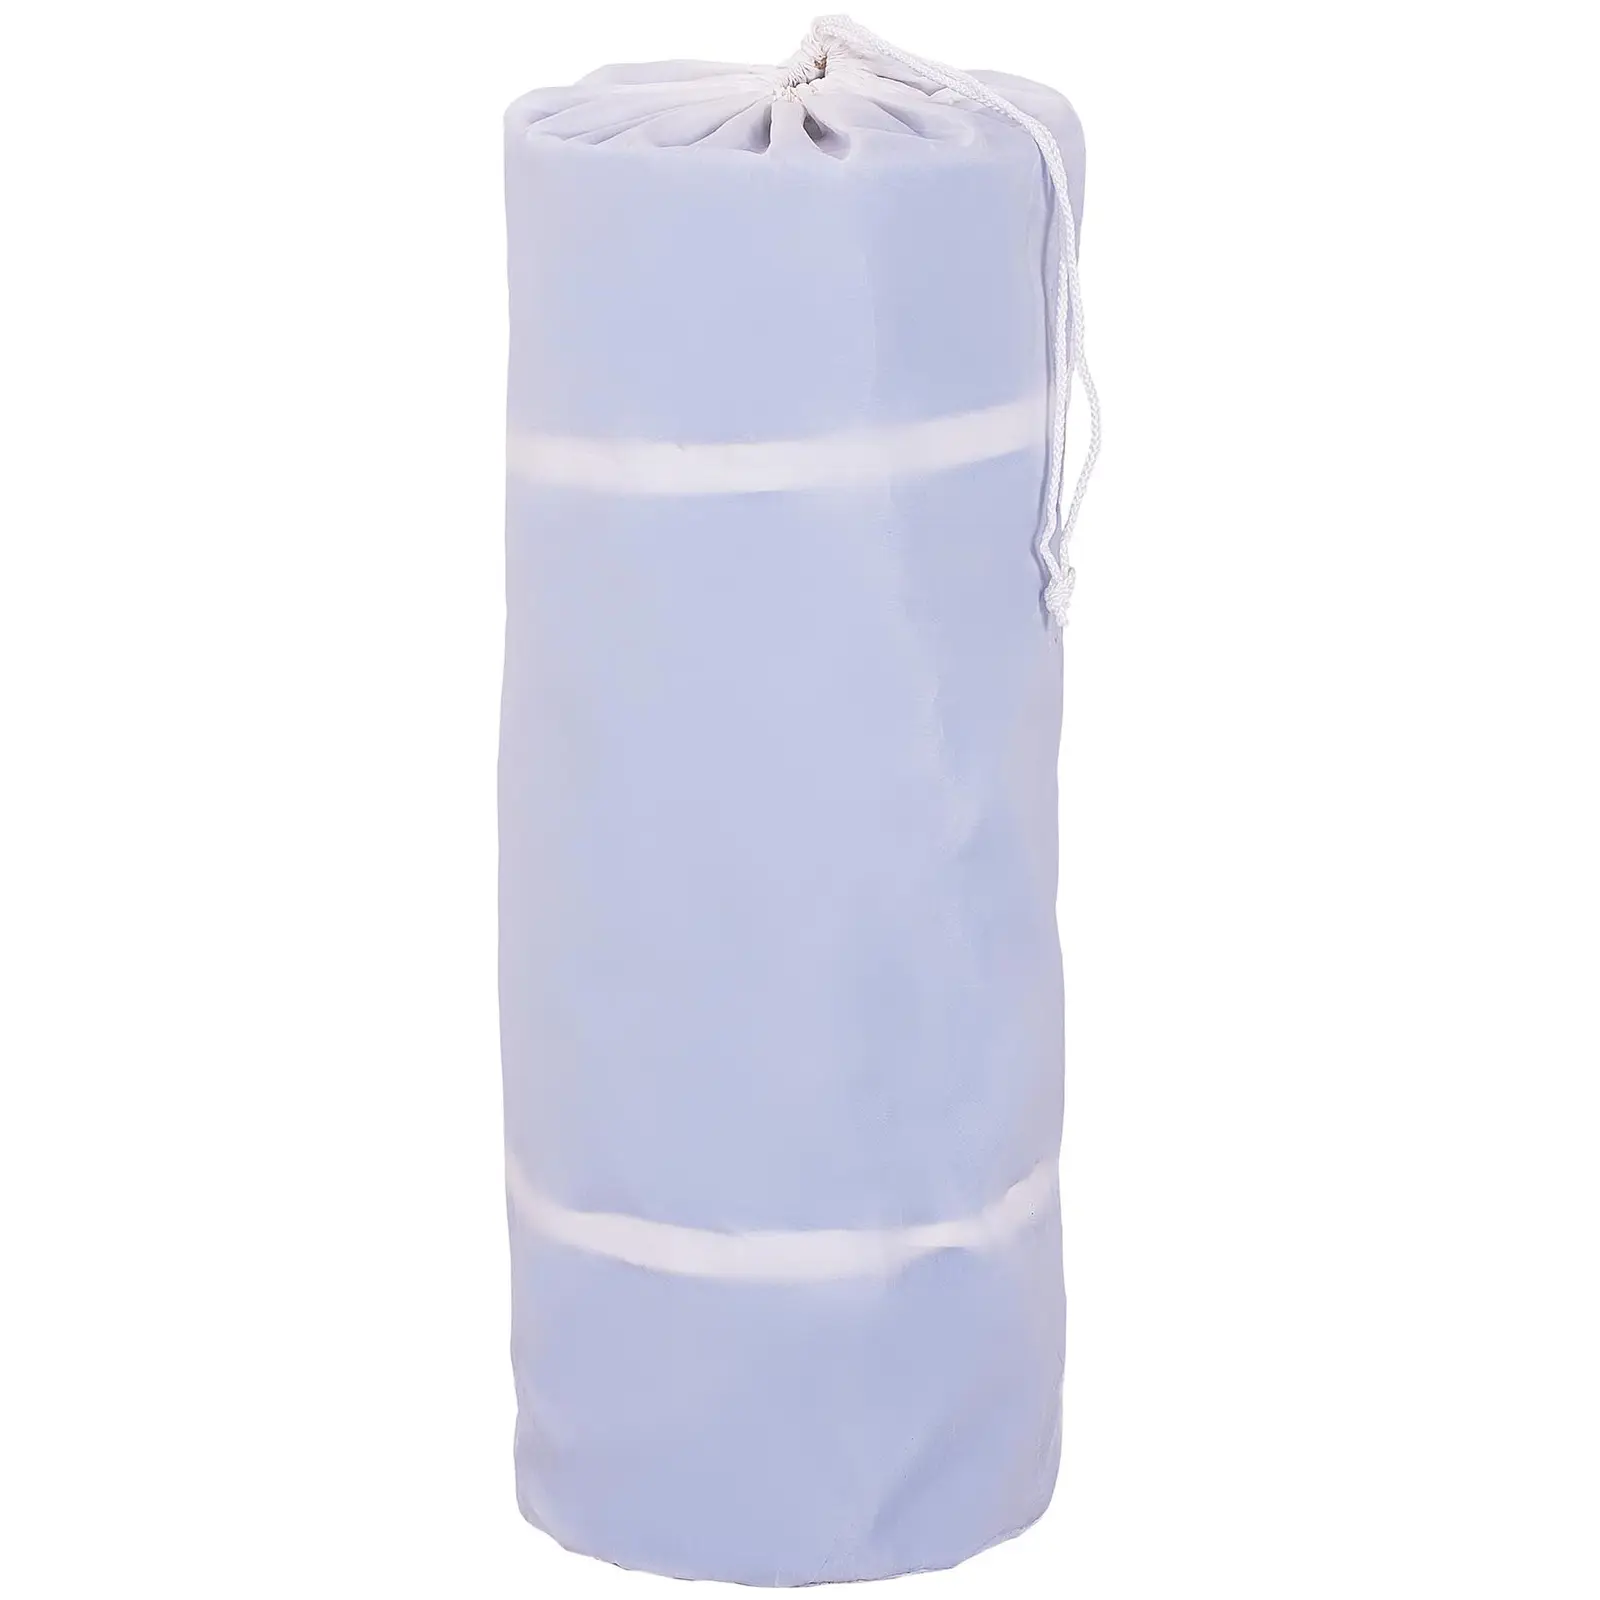 Felfújható tornaszőnyeg készlet pumpával - 300 x 200 x 20 cm - 300 kg - kék/fehér